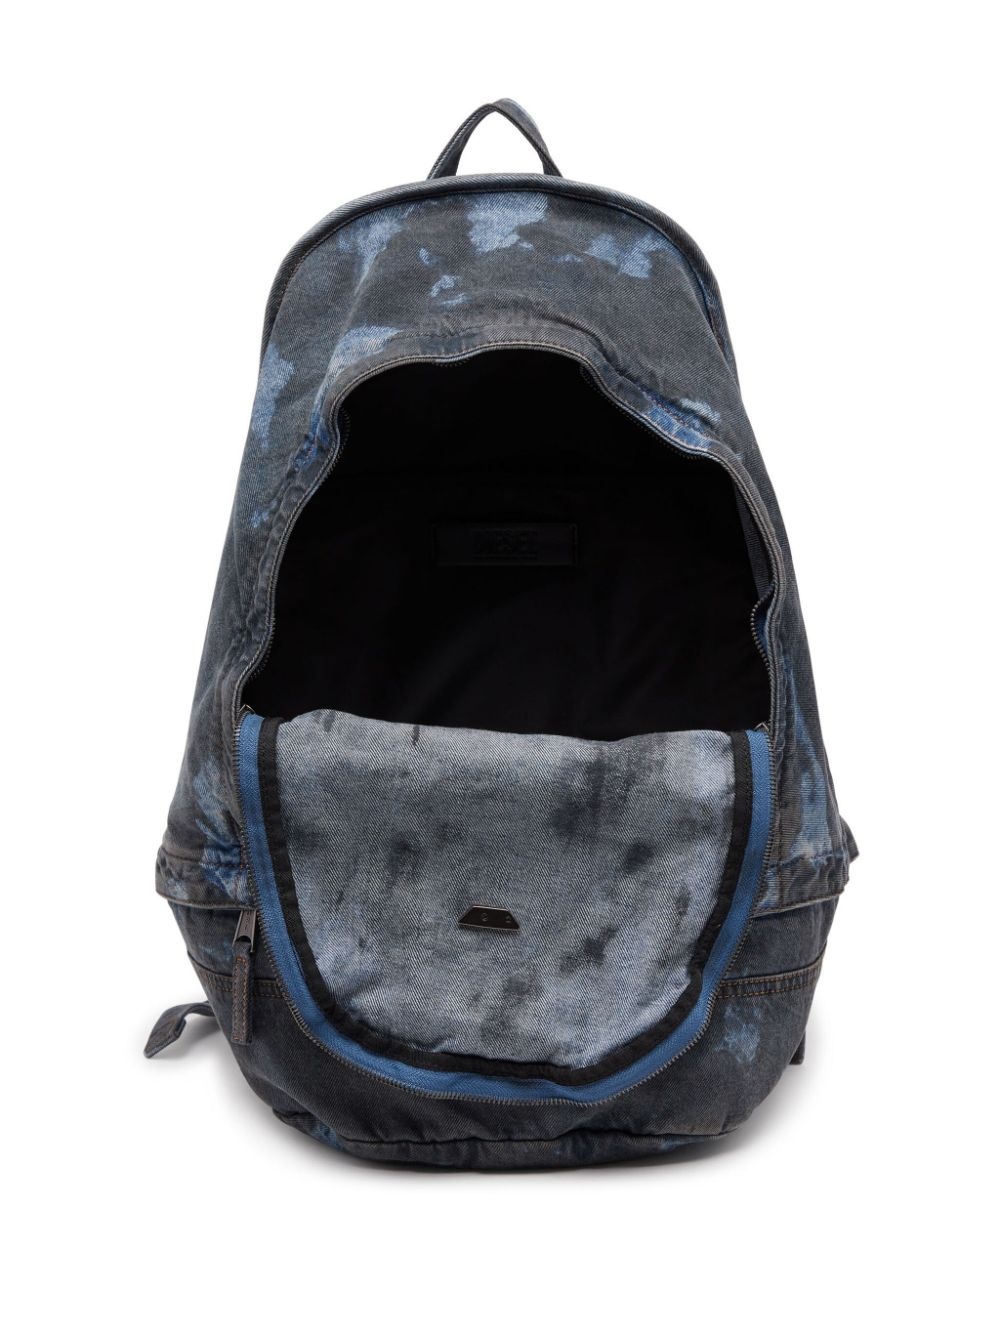 Rave coated denim backpack - 4